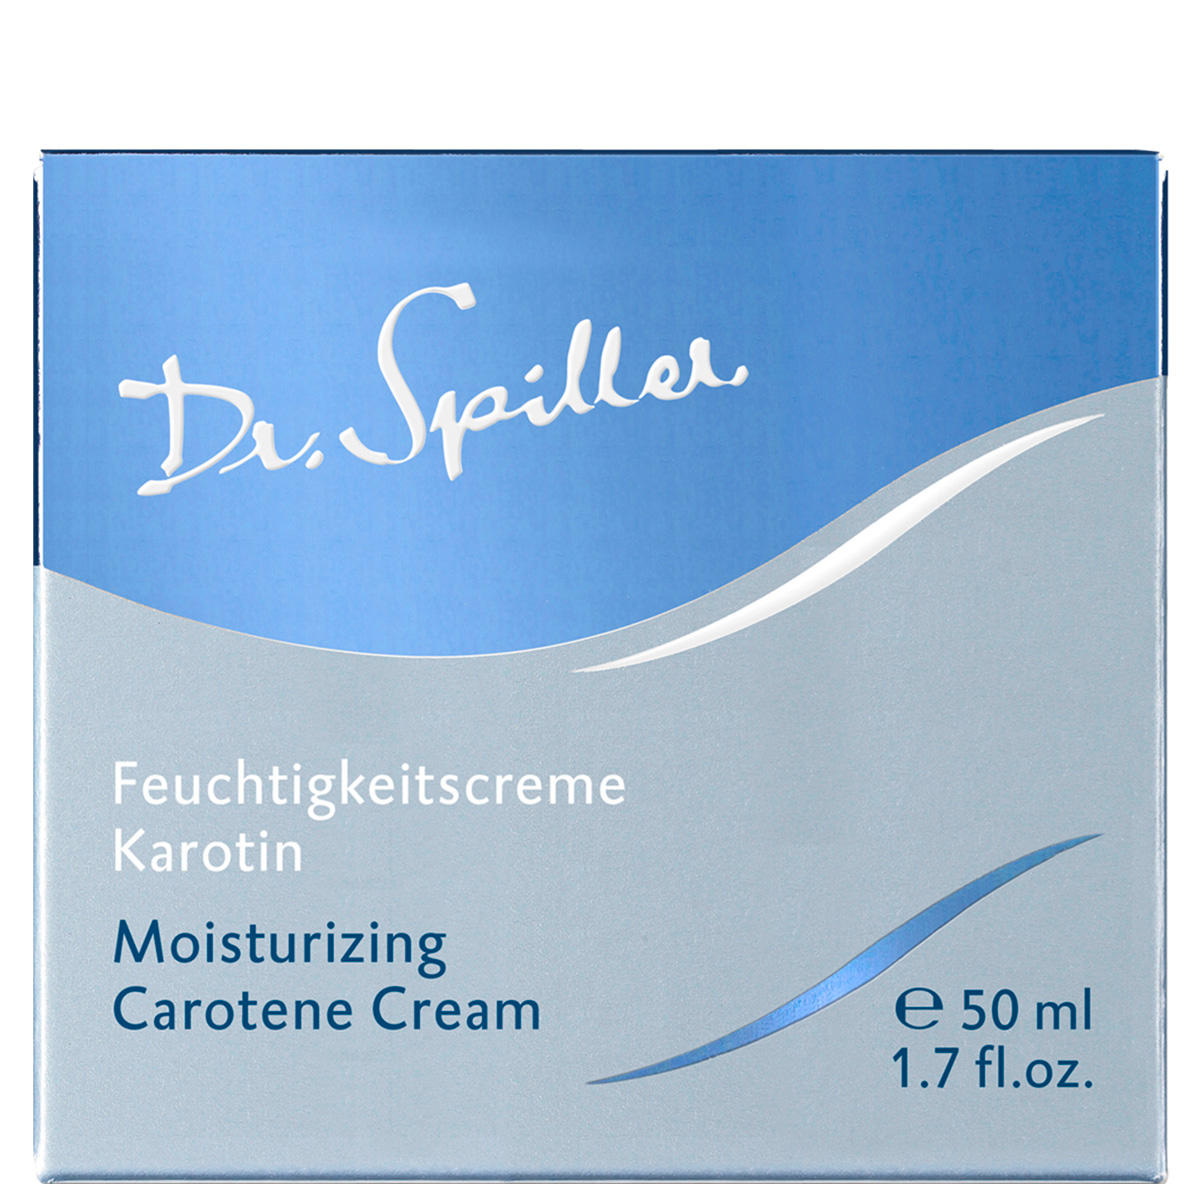 Dr. Spiller Biomimetic SkinCare Feuchtigkeitscreme Karotin 50 ml - 3